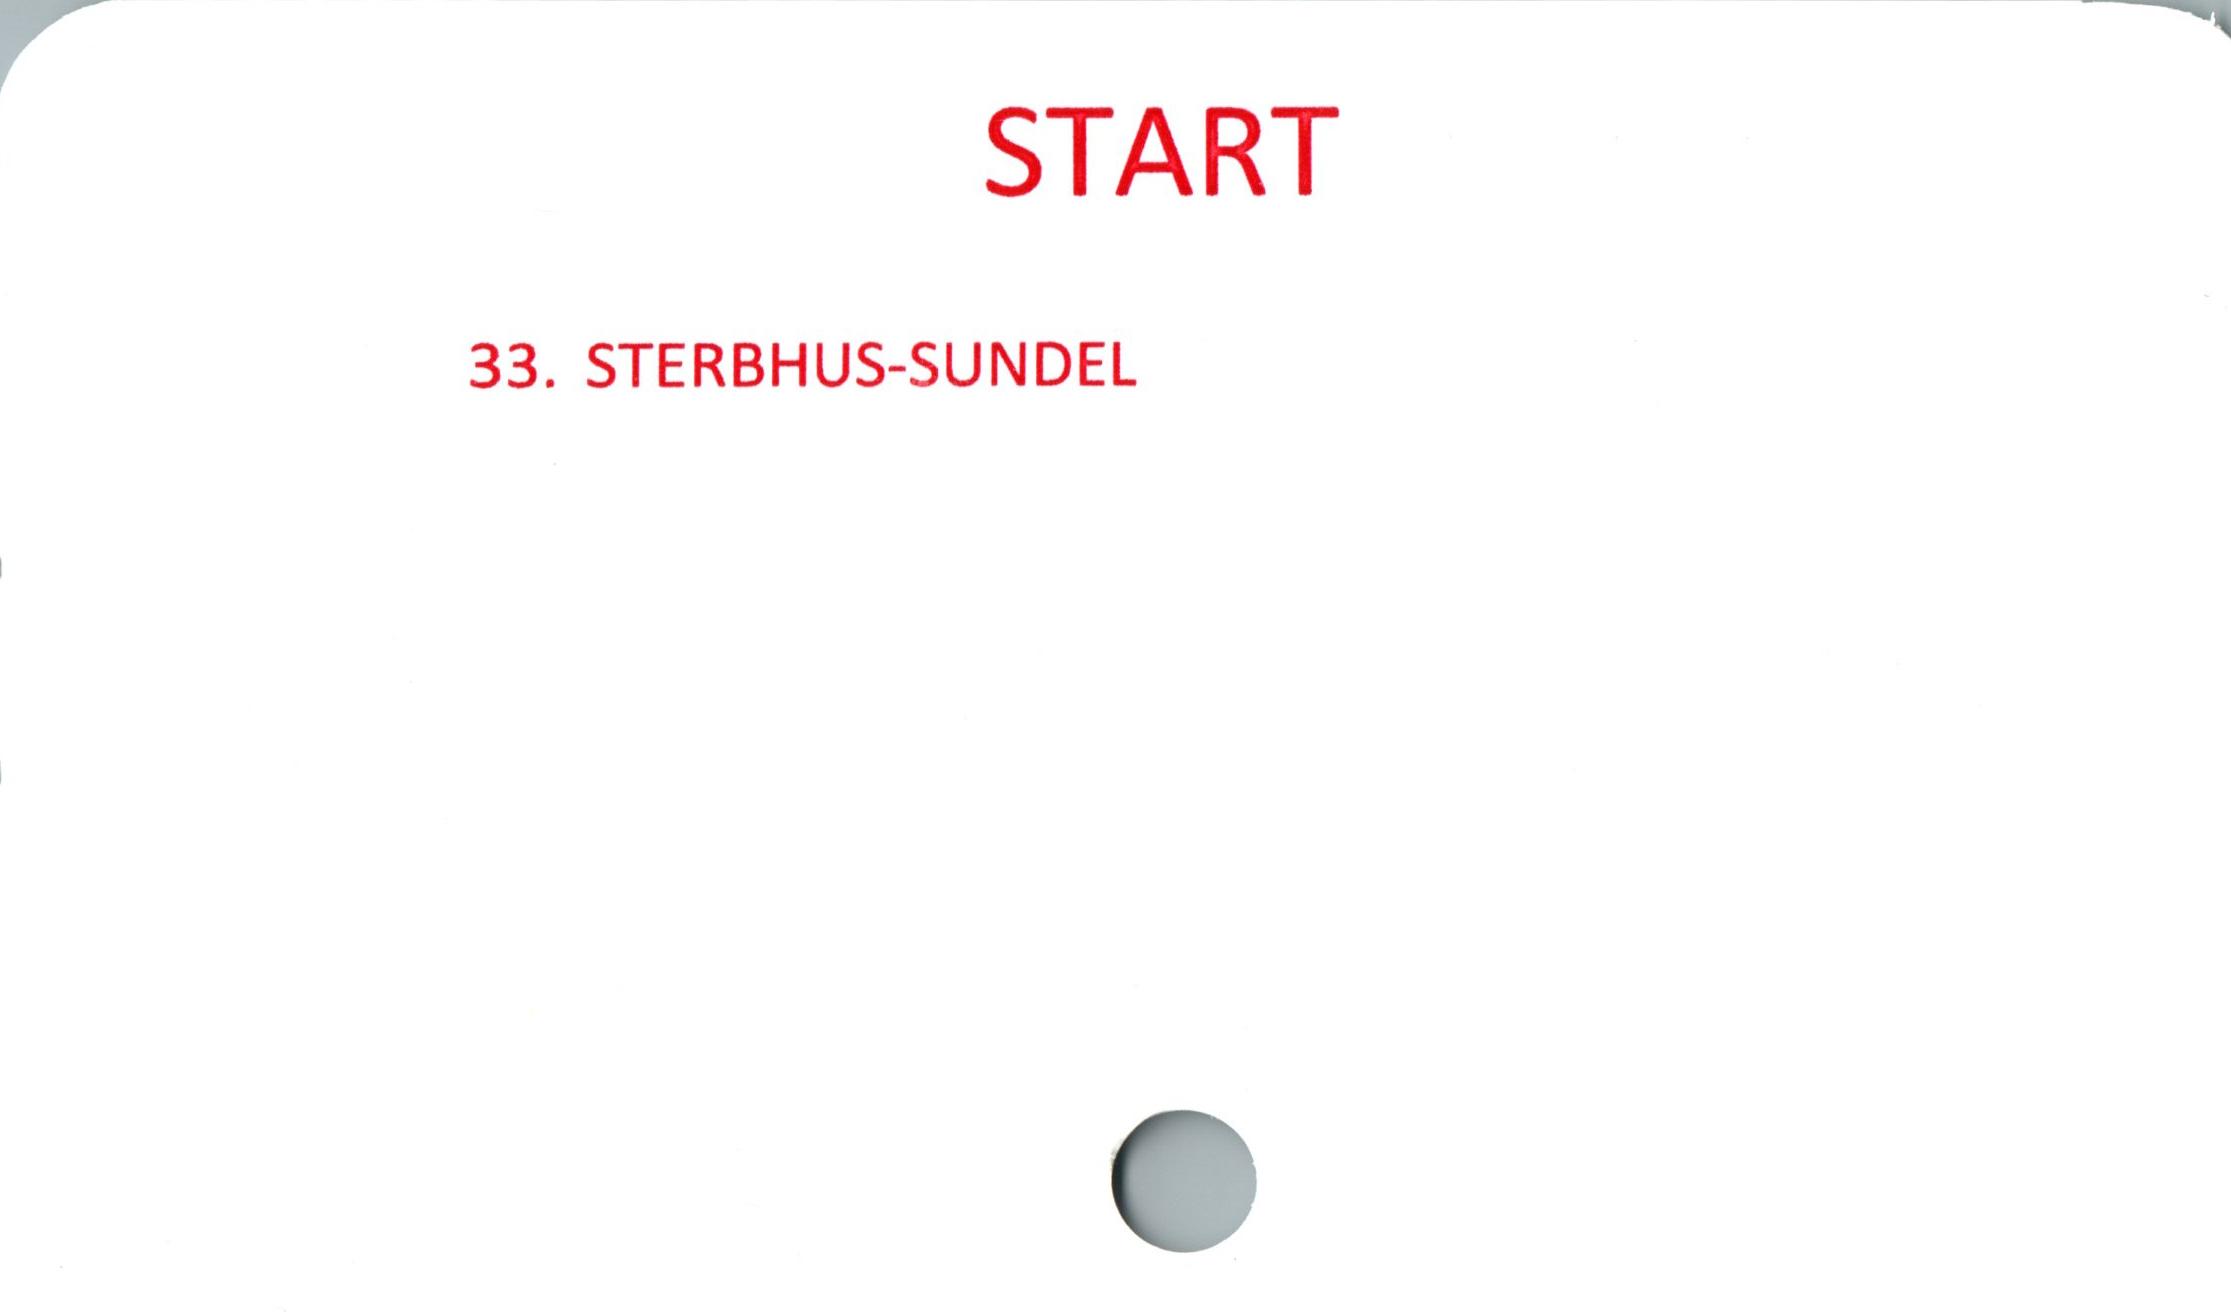  ﻿START

33. STERBHUS-SUNDEL